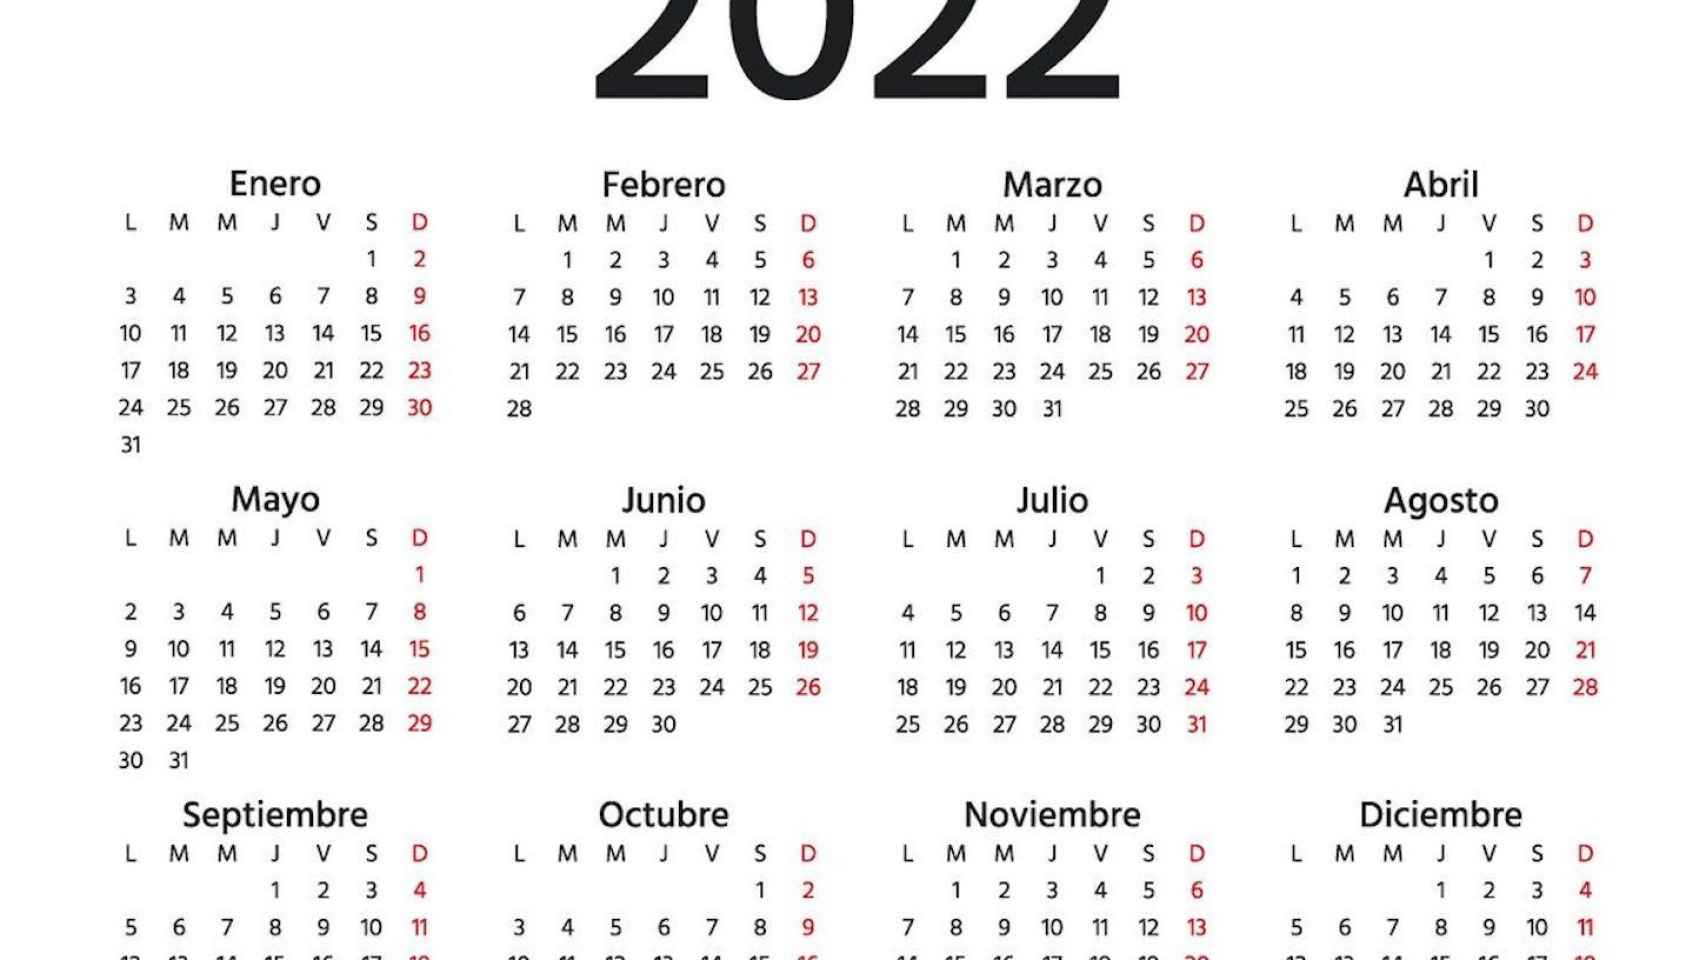 Calendario del año que viene, 2022